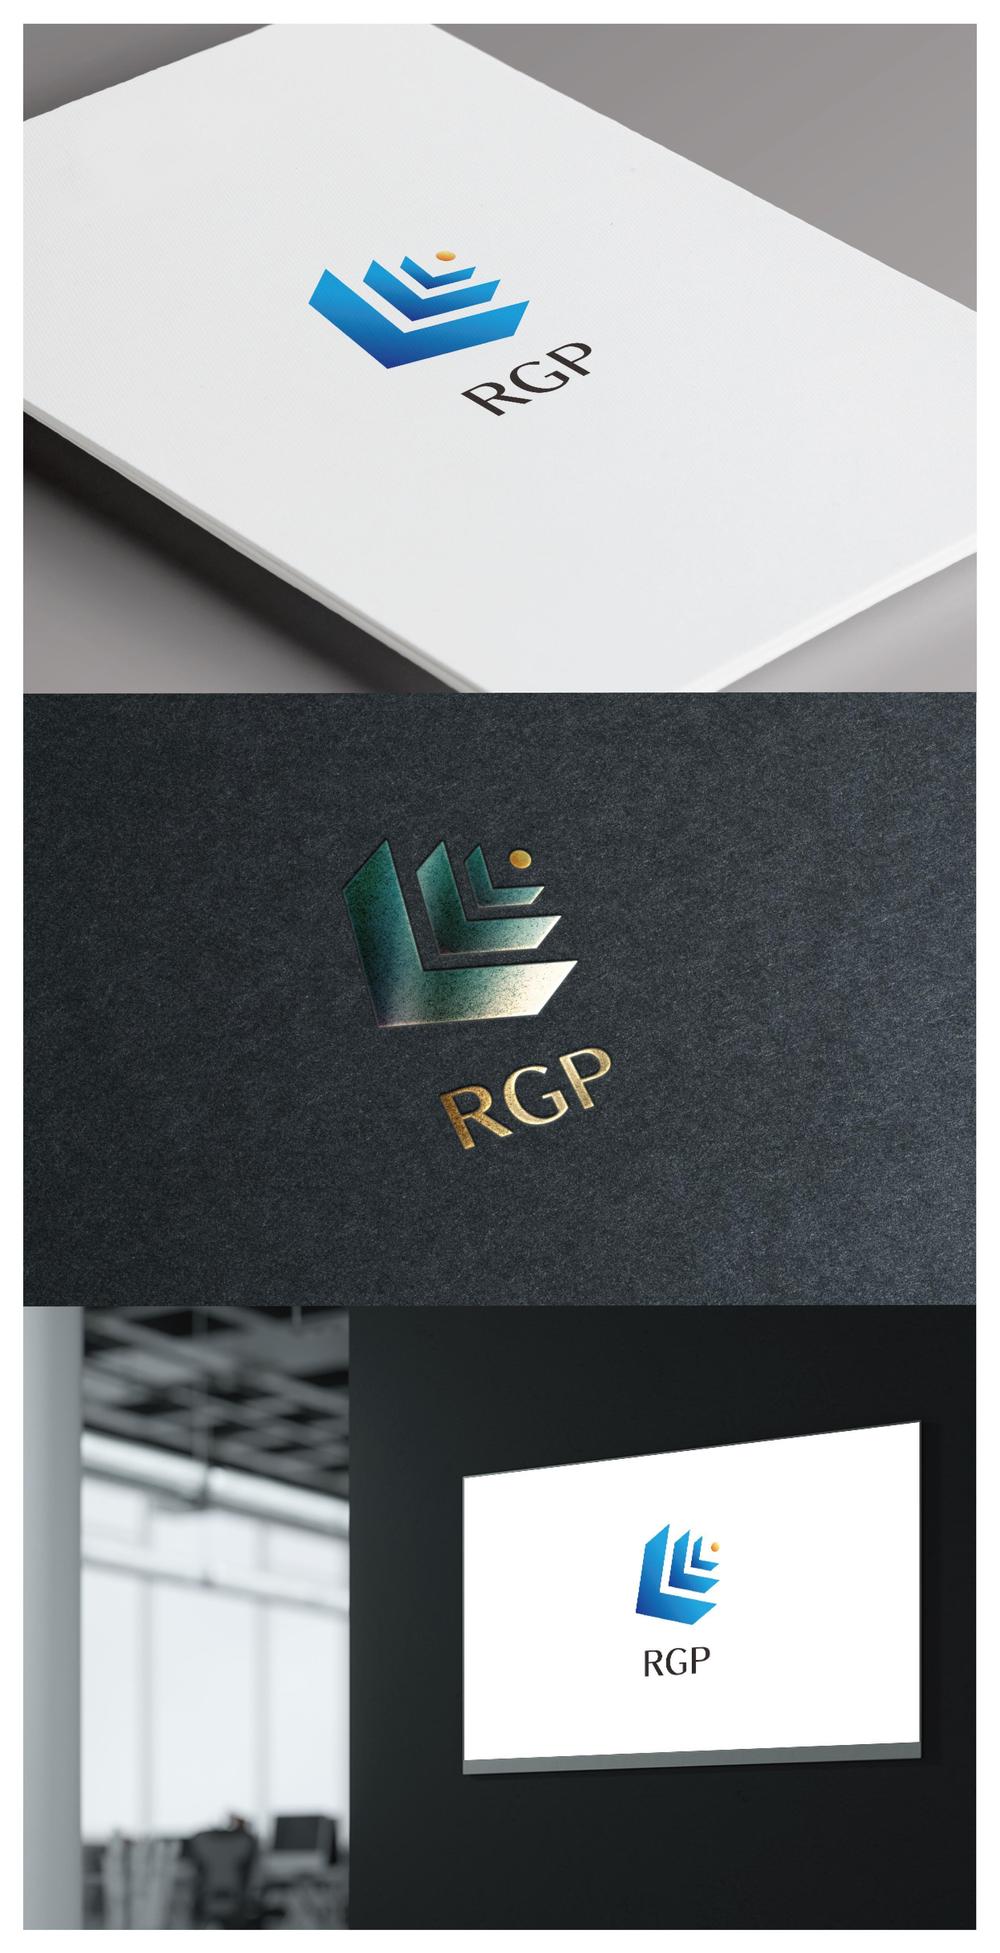 RGP_logo01_01.jpg